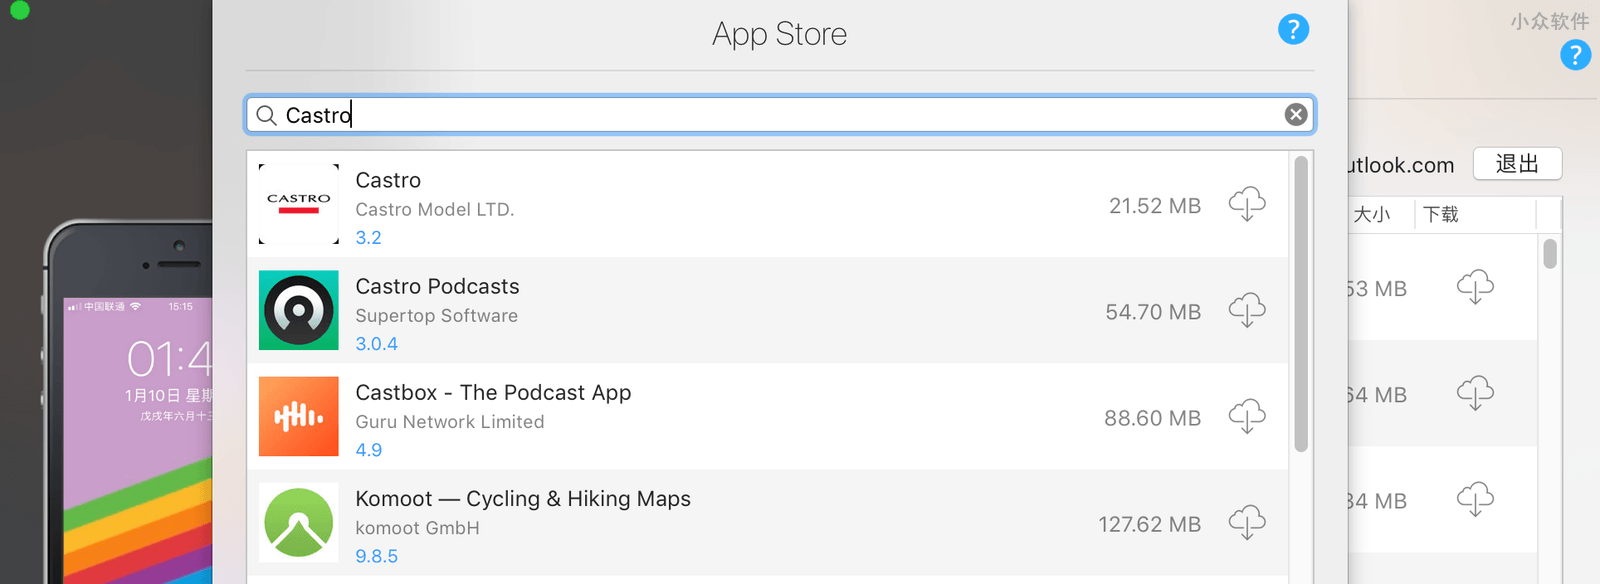 那个可以备份 iOS 下架应用的 iMazing 正在冰点特价，只需 64 元 3